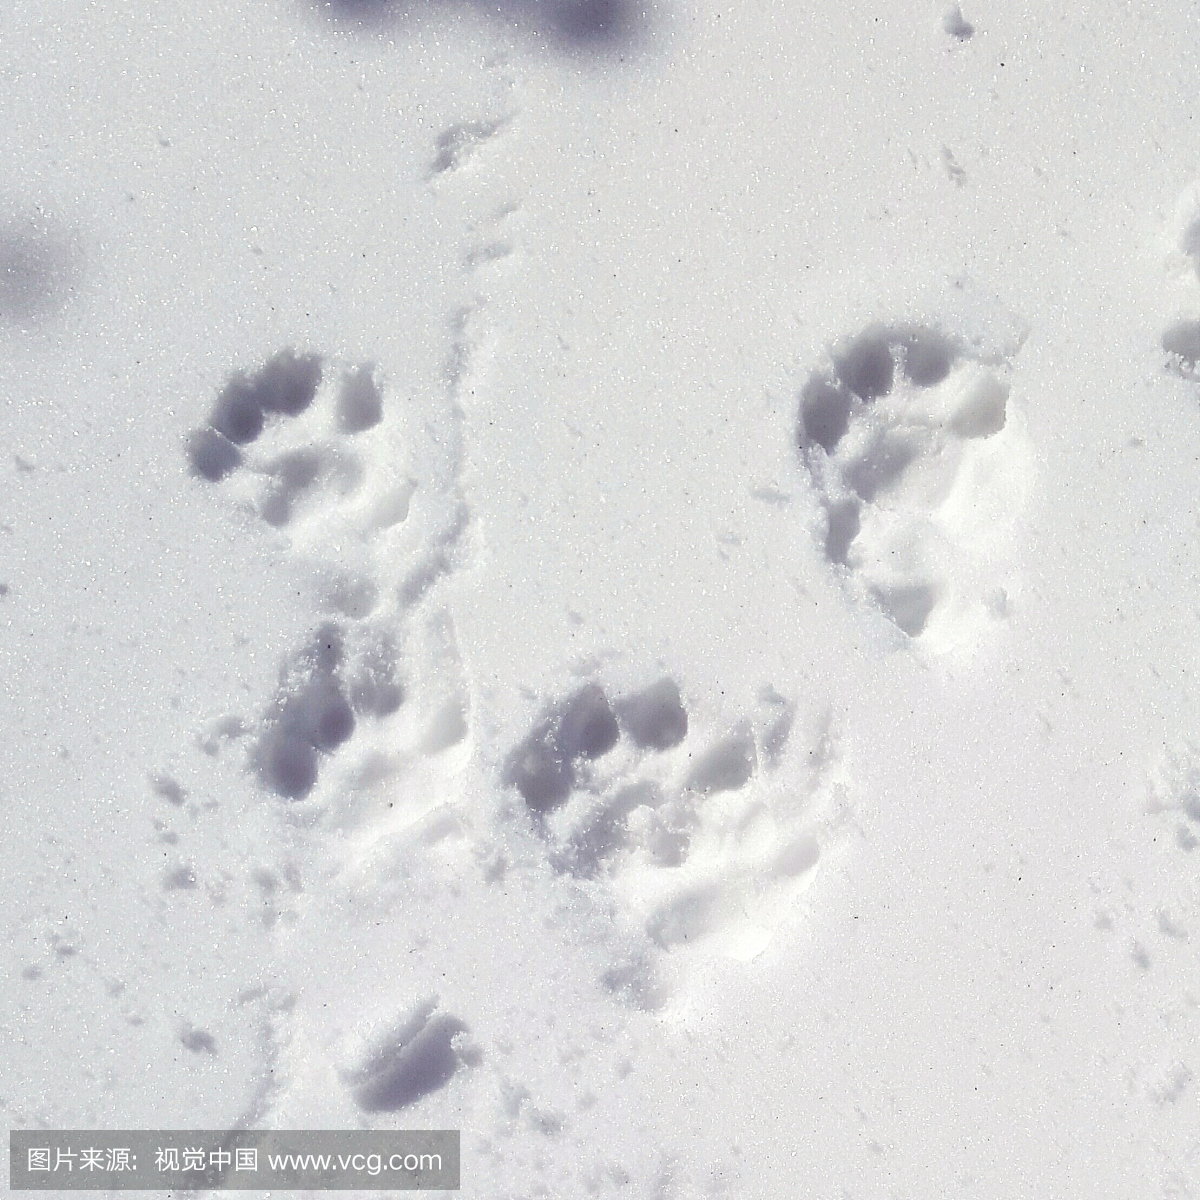 狗脚印在雪覆盖的领域